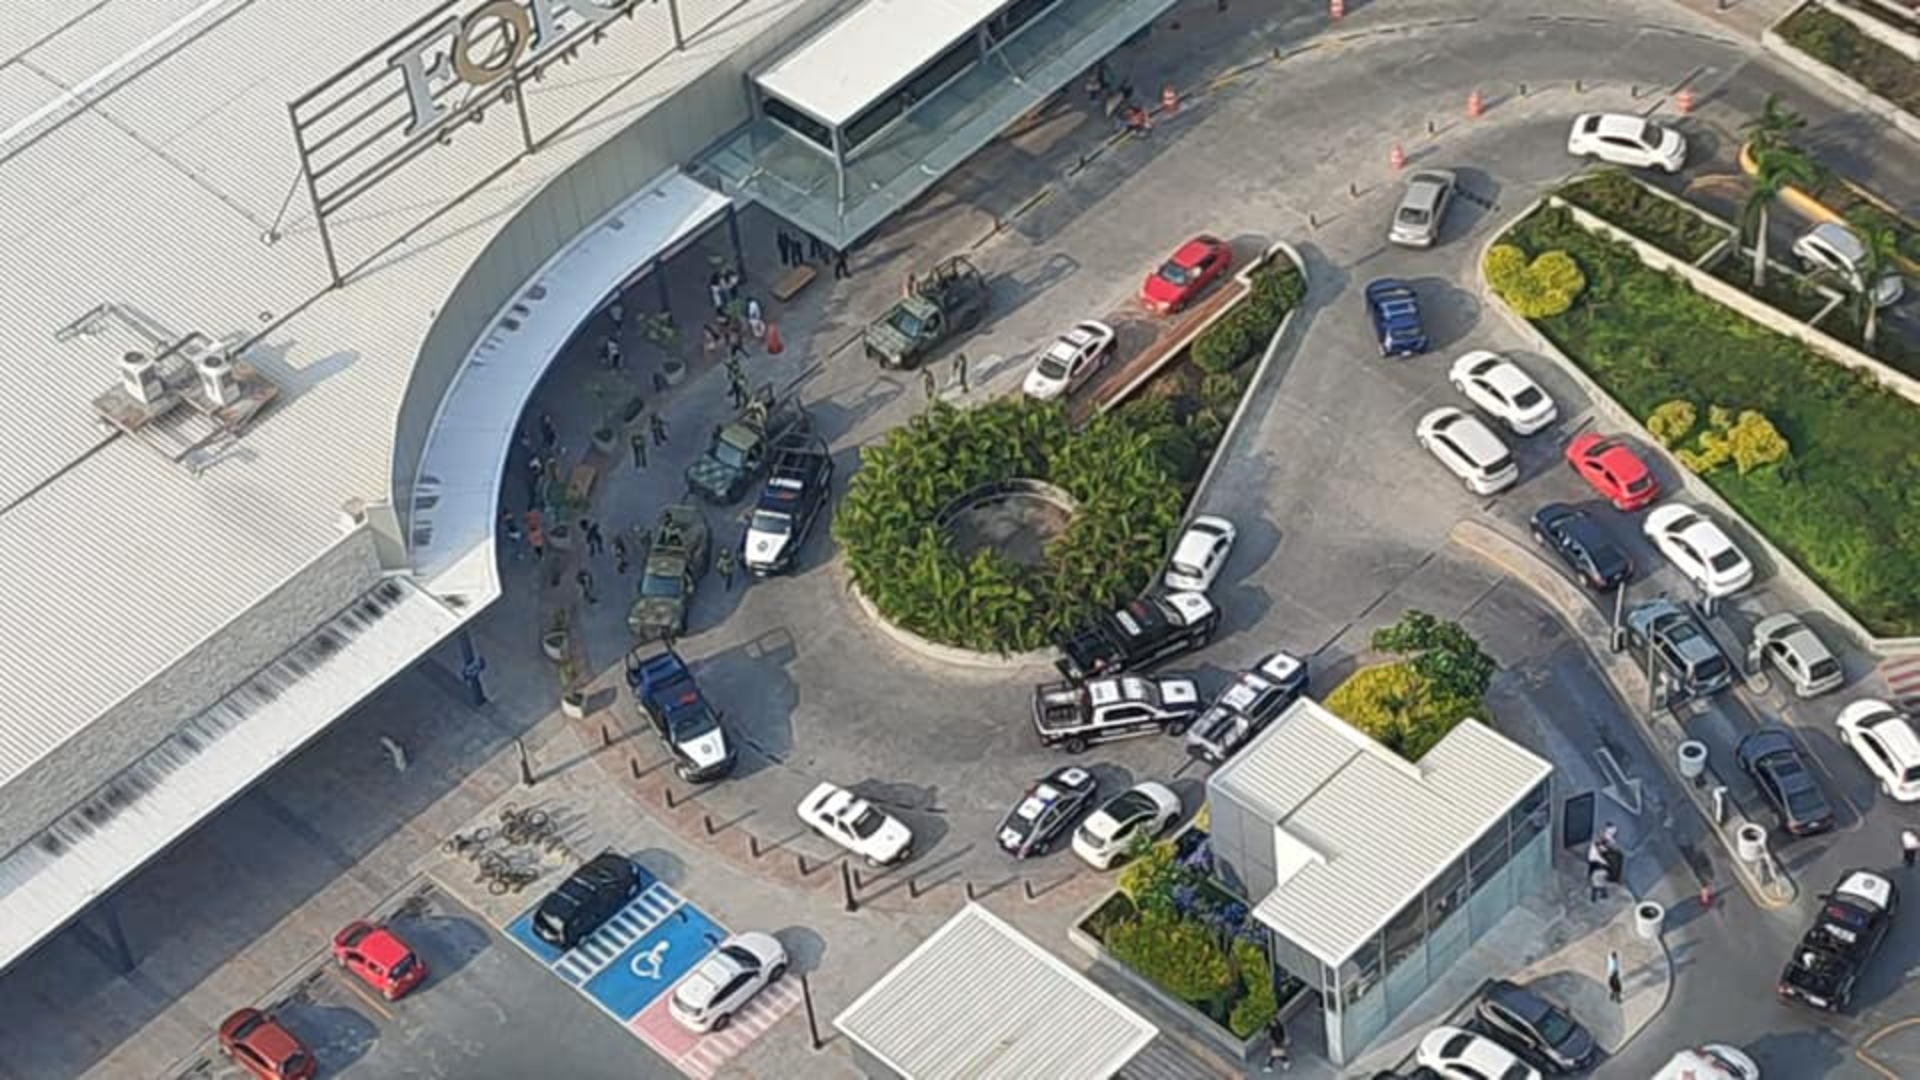 “No hubo balacera ni heridos”: qué ocurrió realmente en Plaza Fórum, Cuernavaca